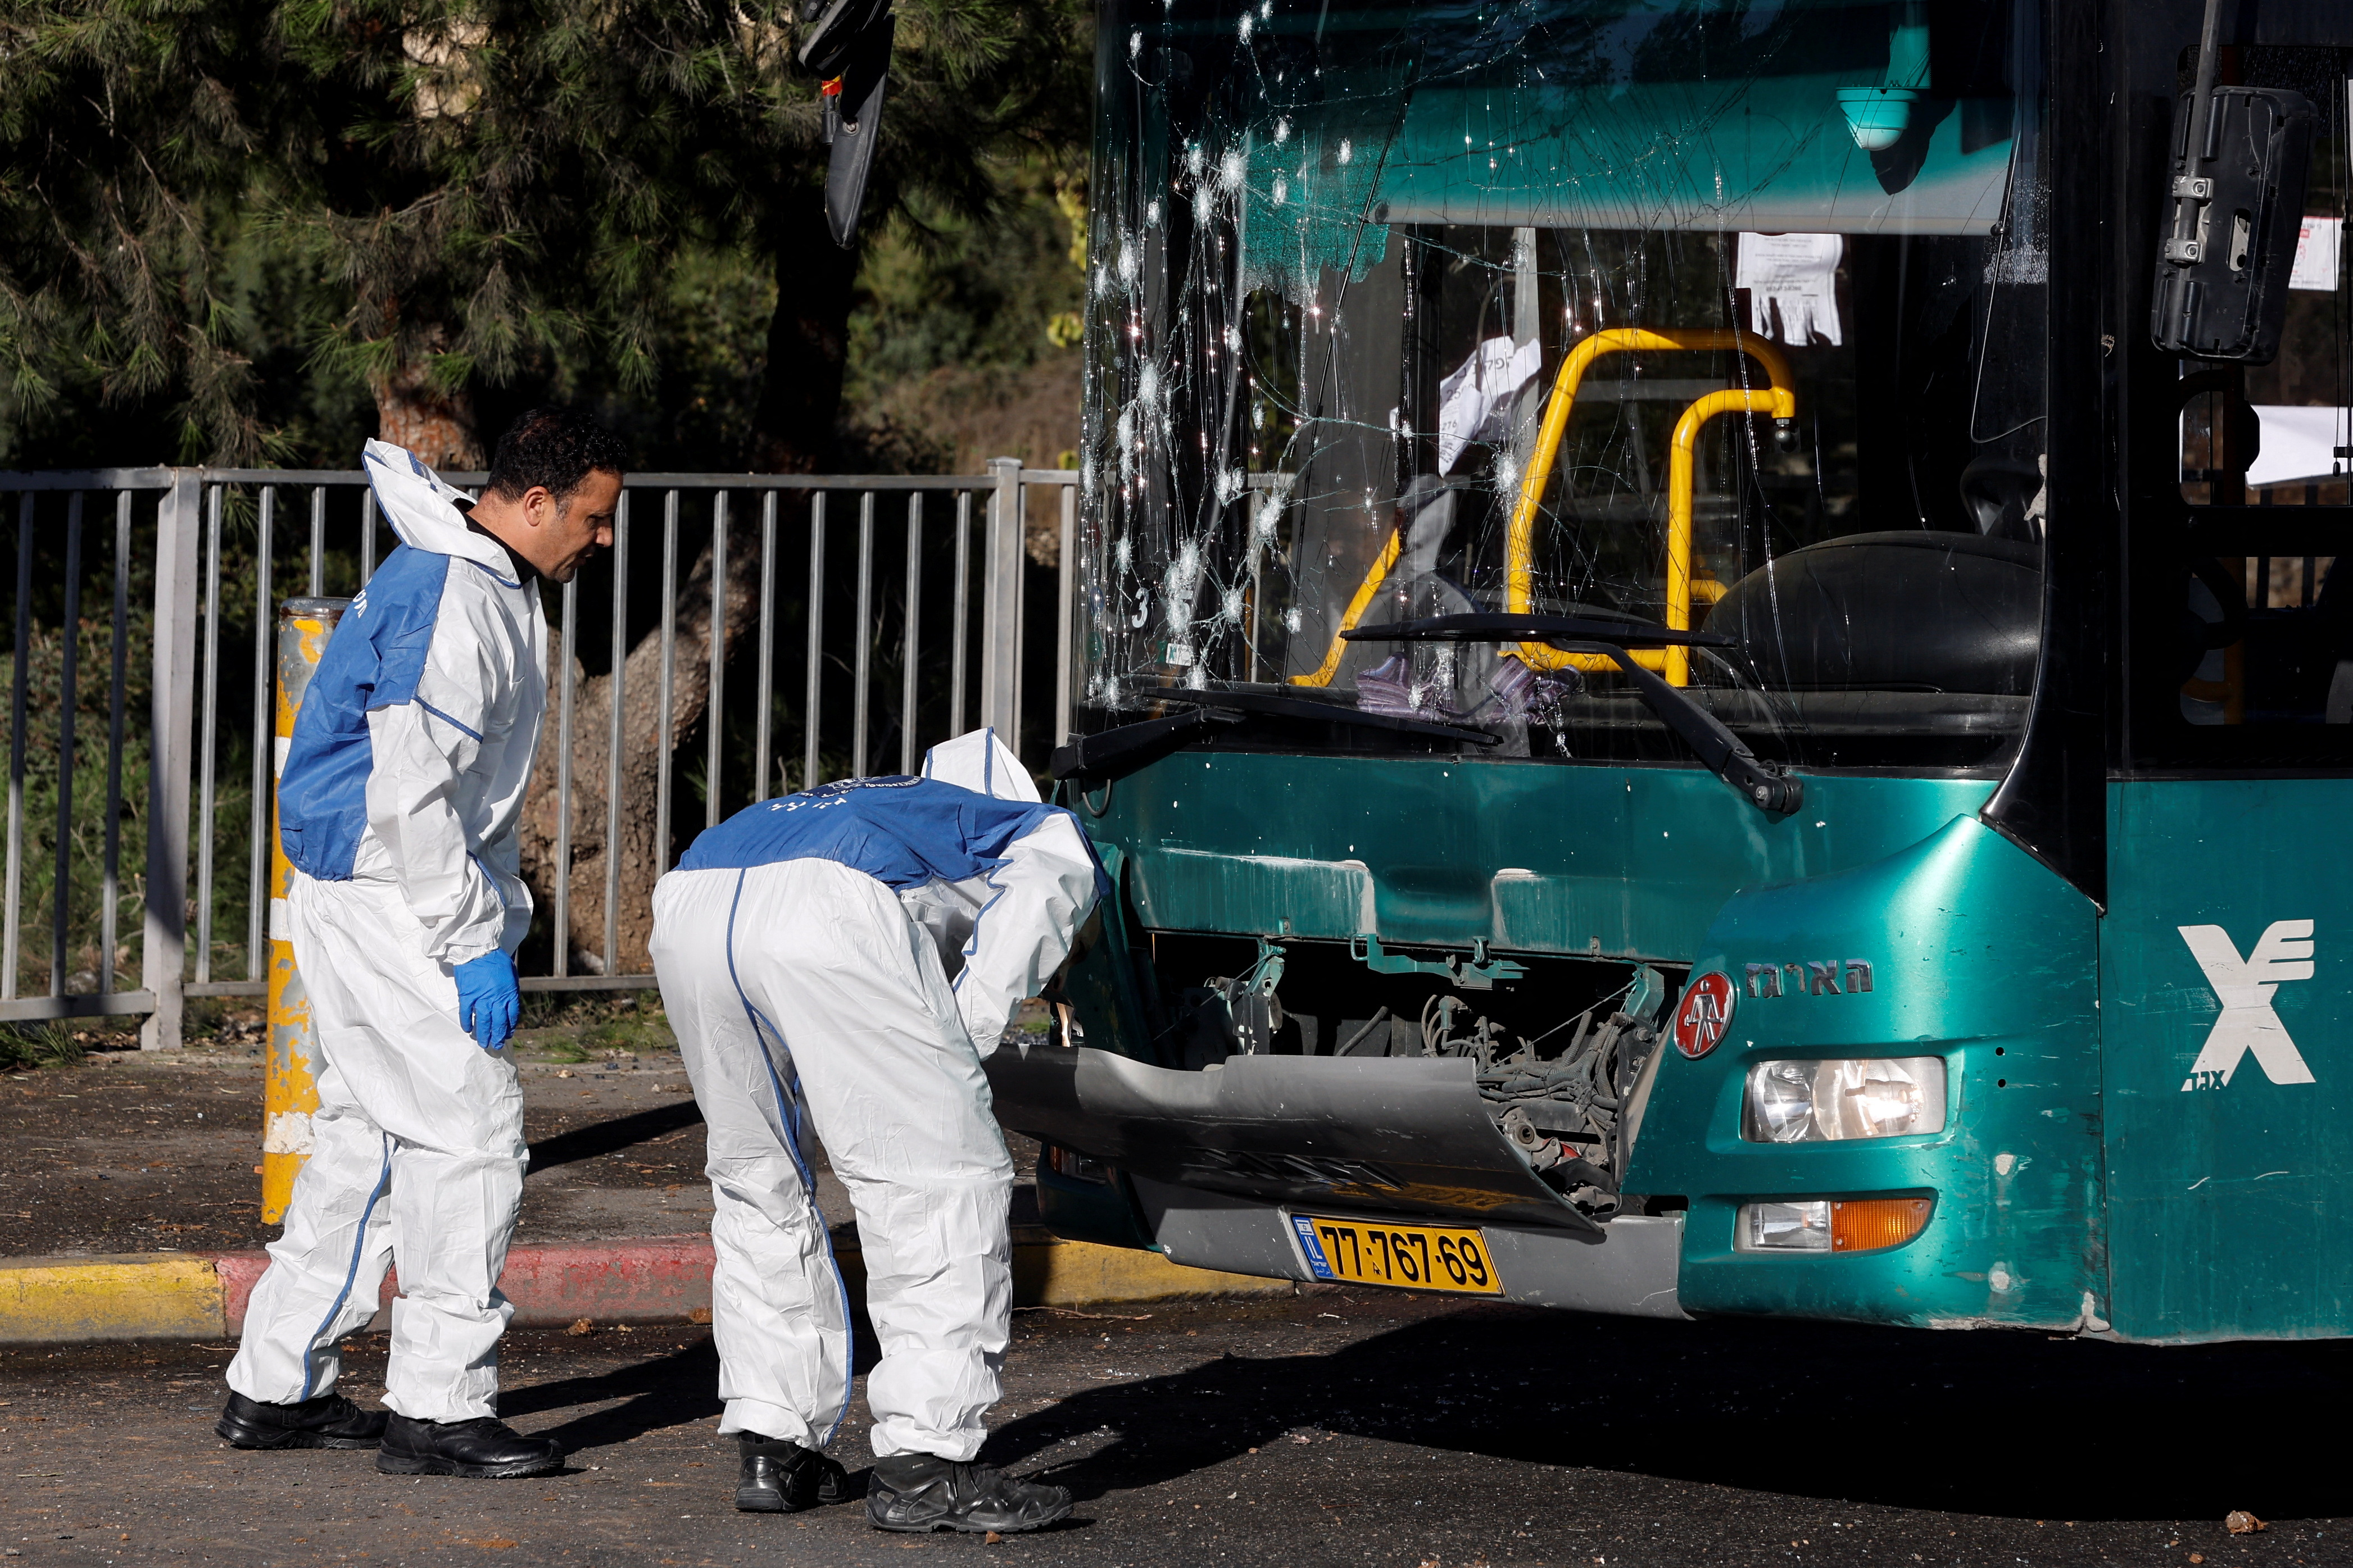 A primera hora de la mañana, se registró una primera explosión en una parada de autobuses que dejó al menos 12 heridos. (REUTERS)